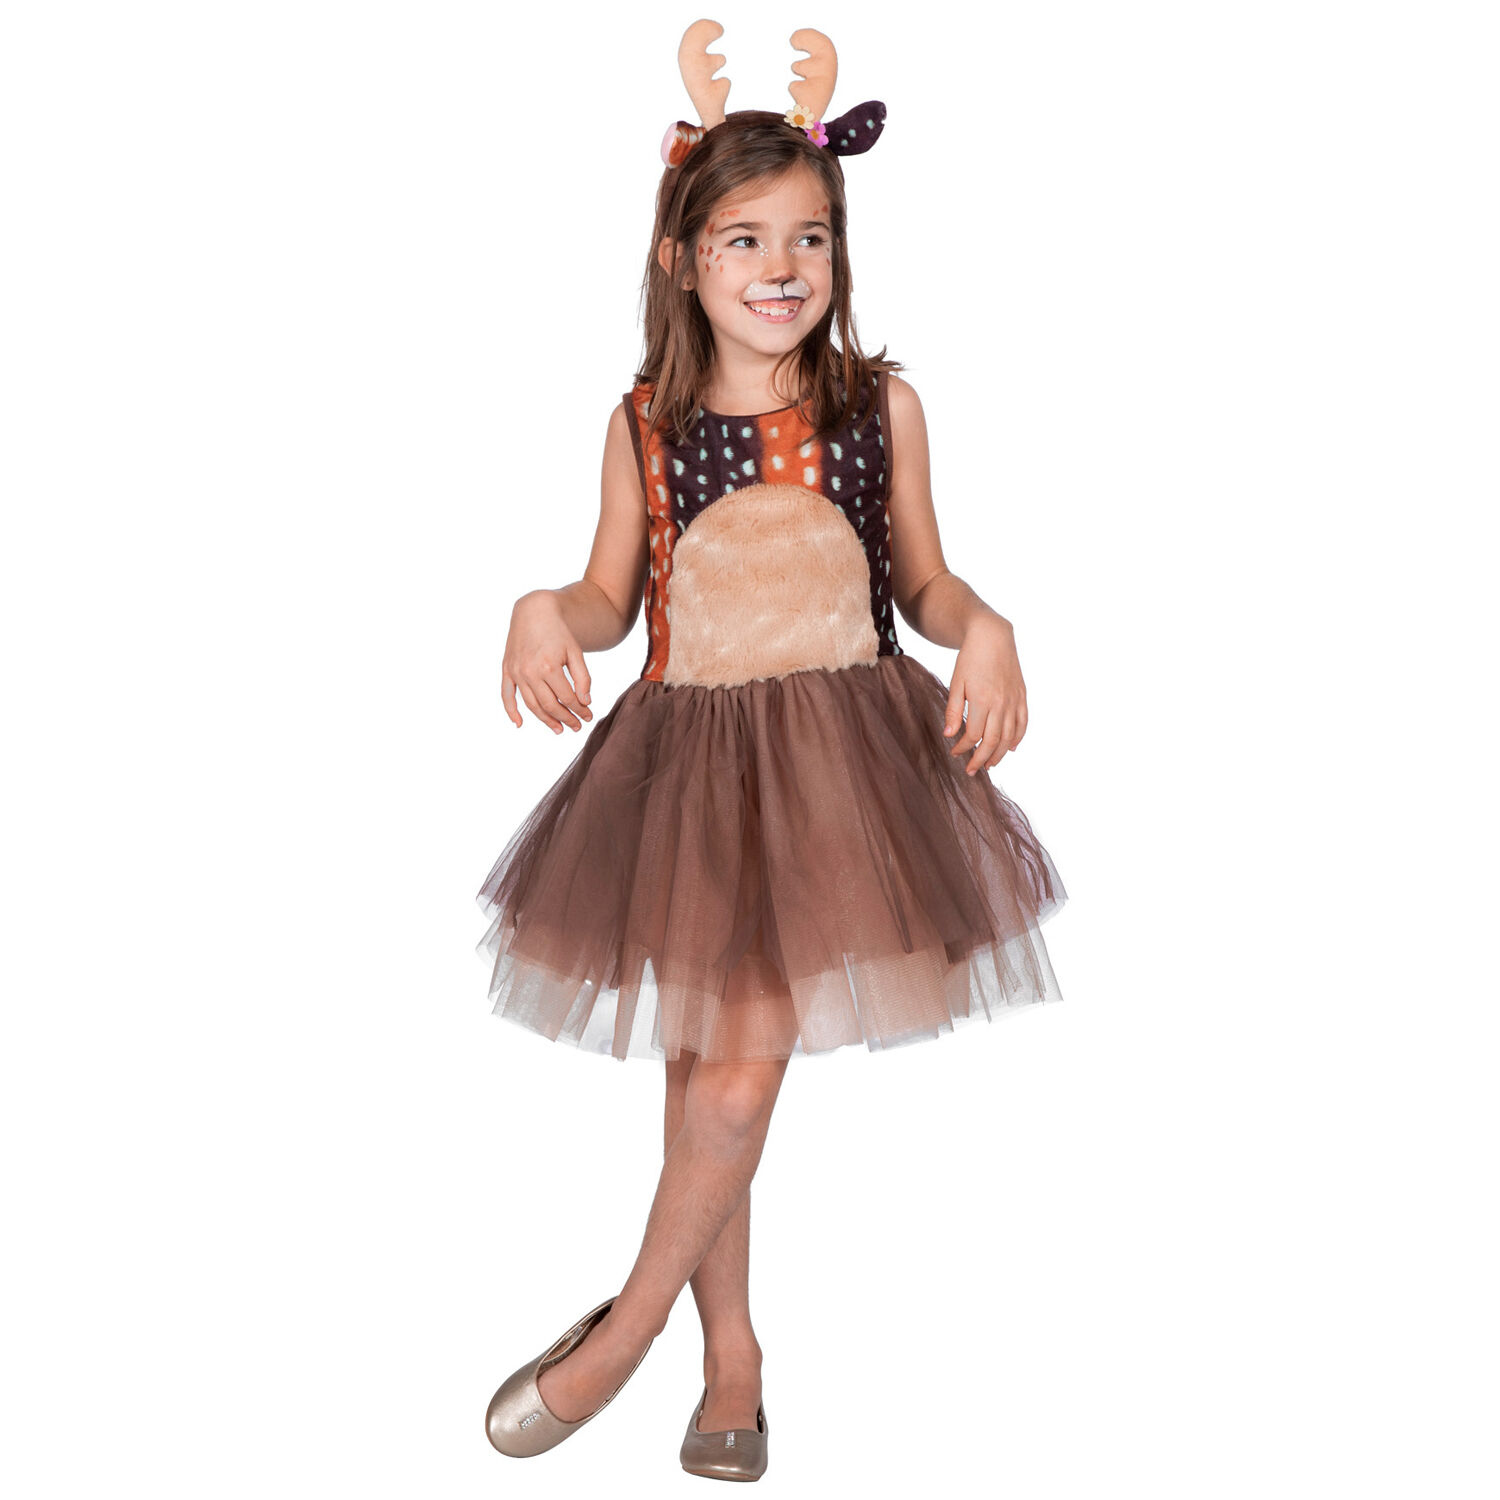 Kinder-Kostüm kleines Reh - Verschiedene Größen (116-140) - Kinderkostüme  Tiere & Plüsch Kostüme & Zubehör für Kinder Kostüme & Verkleiden Produkte